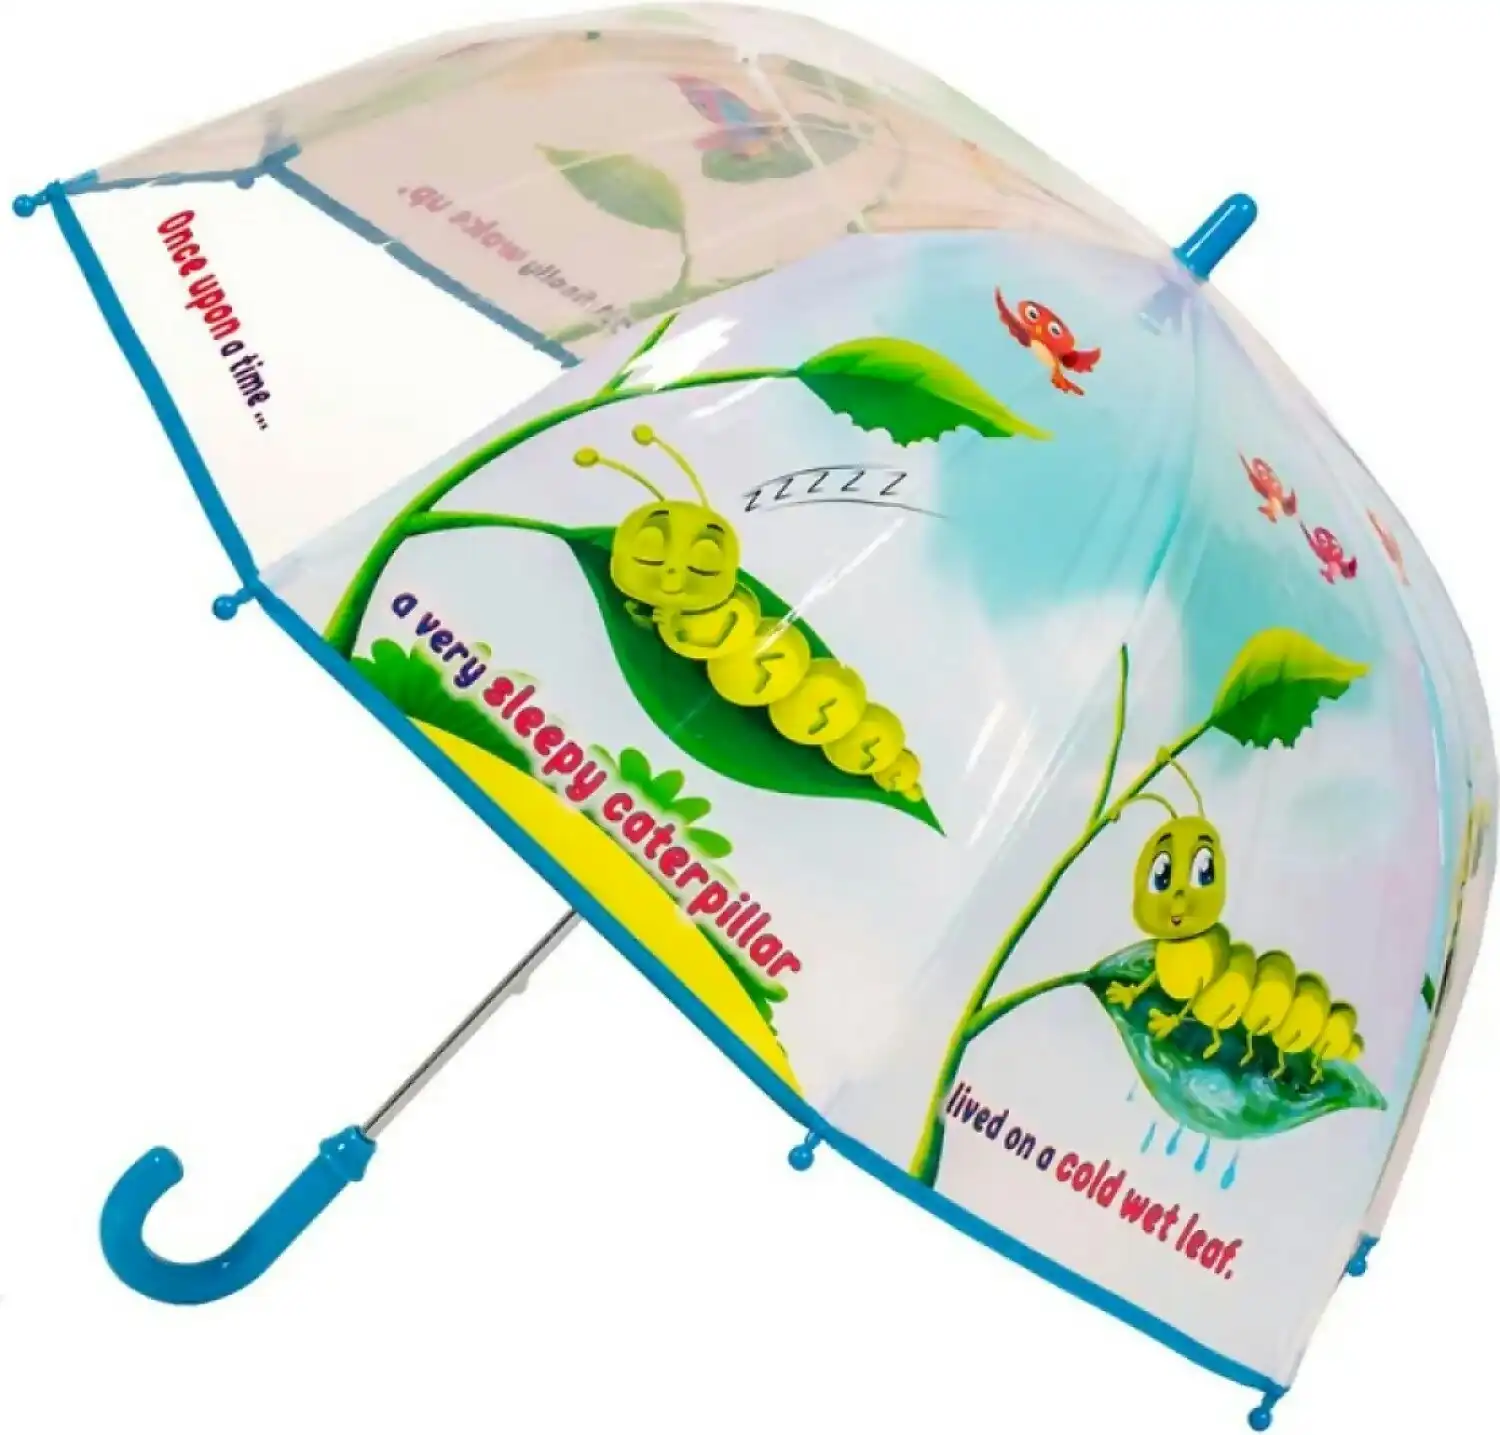 Fun Brellerz - Caterpillar Butterfly Once Upon A Time Kids Dome Umbrella